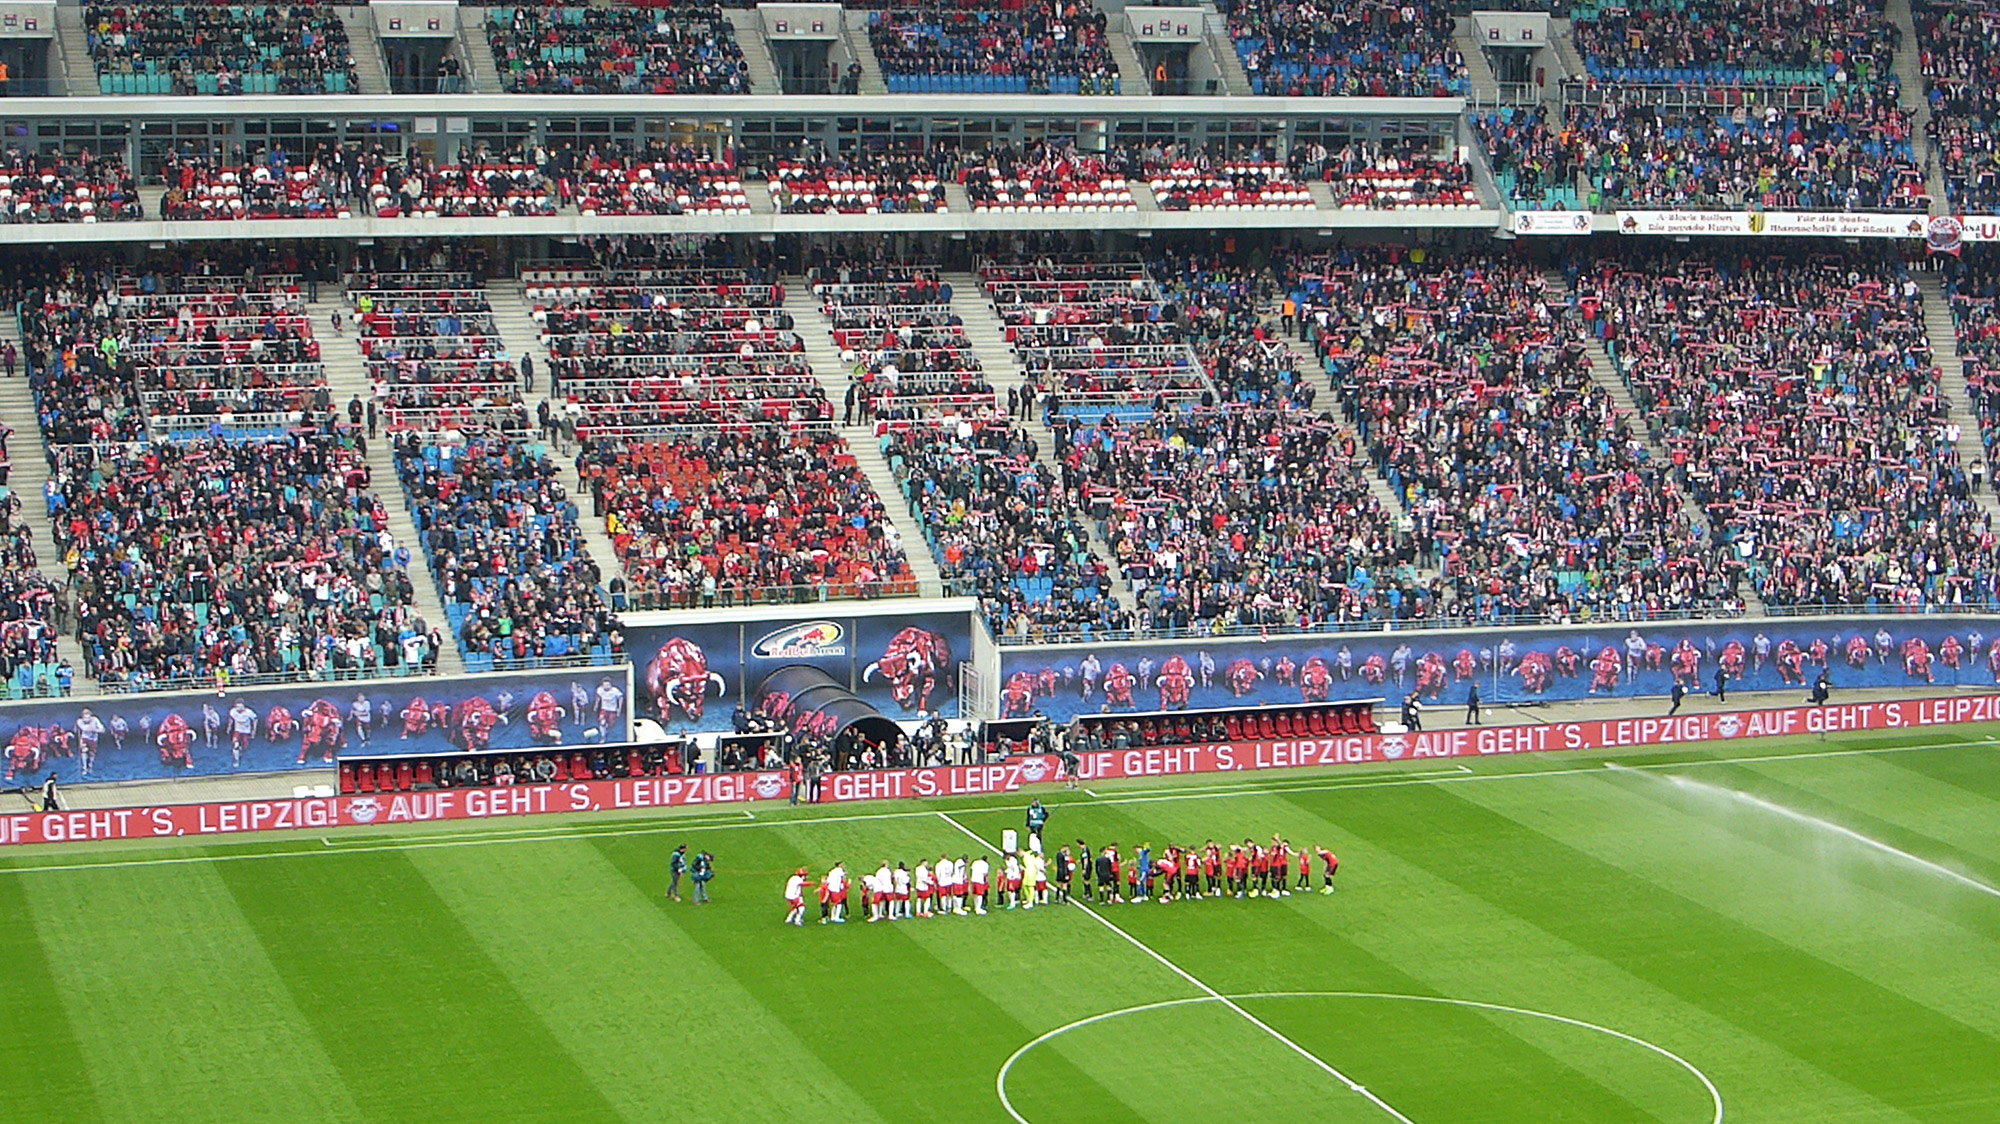 Voetbalwedstrijd van RB Leipzig bezoeken